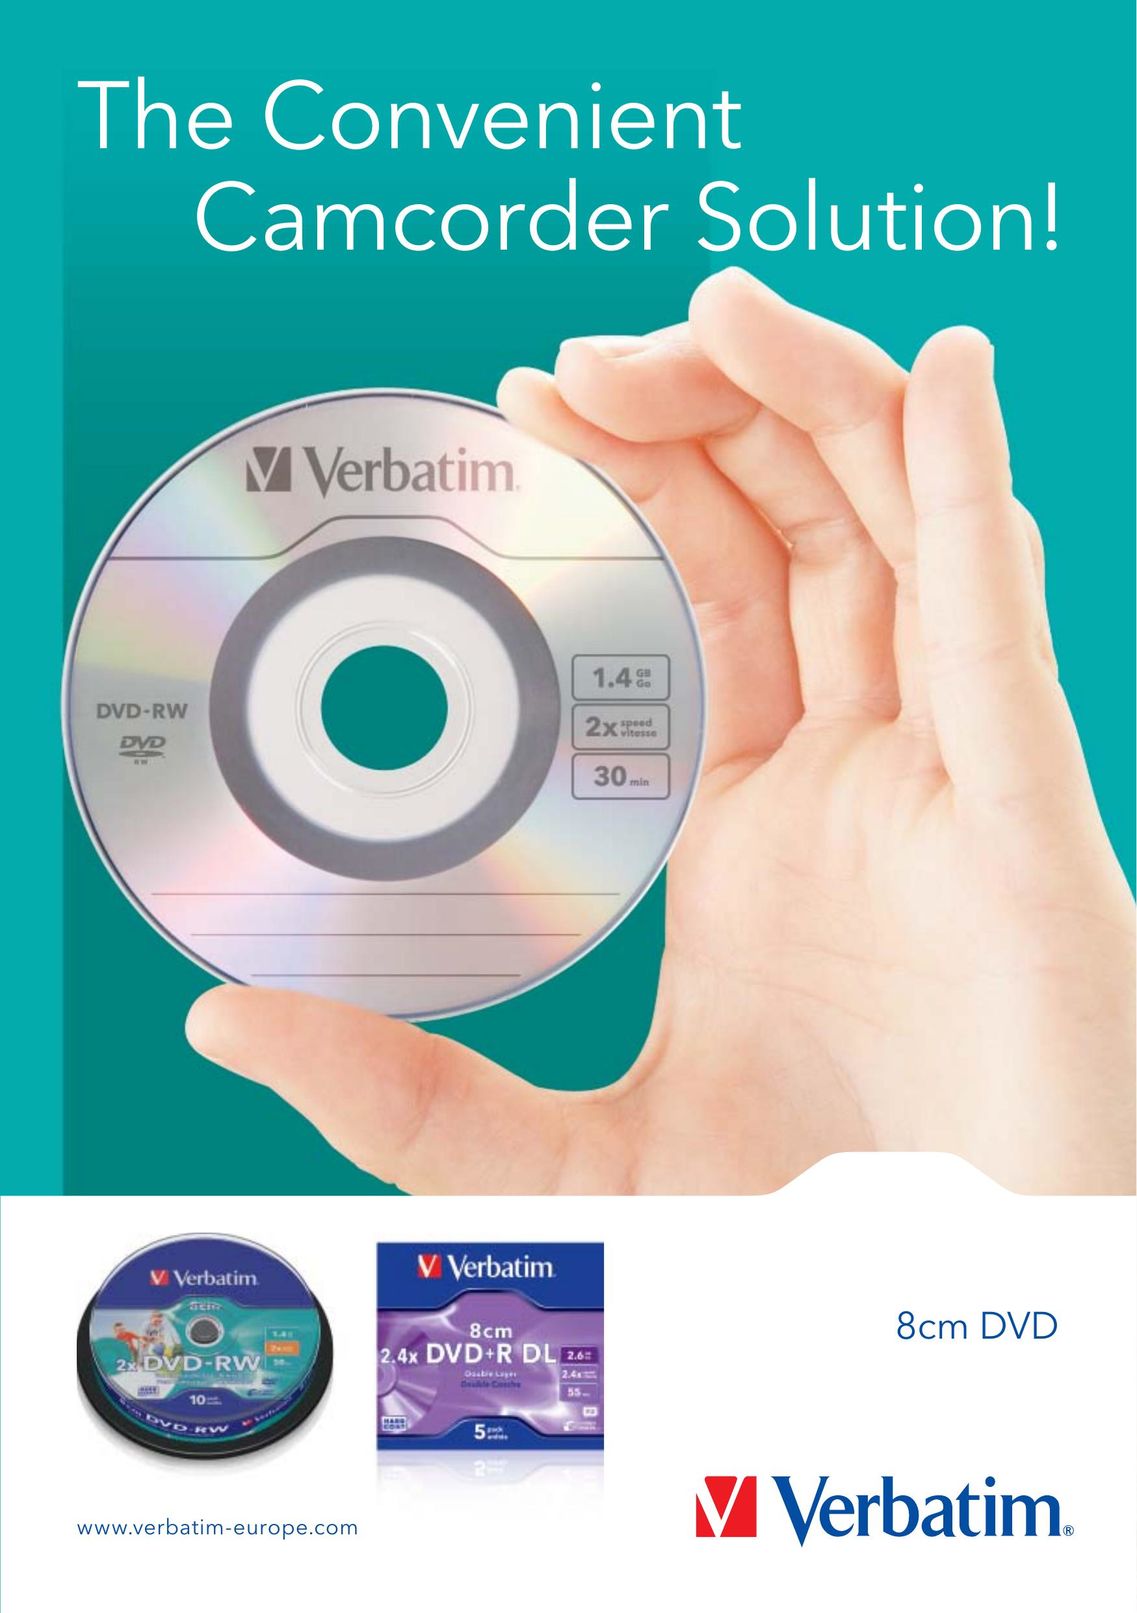 Verbatim 8cm DVD Computer Drive User Manual